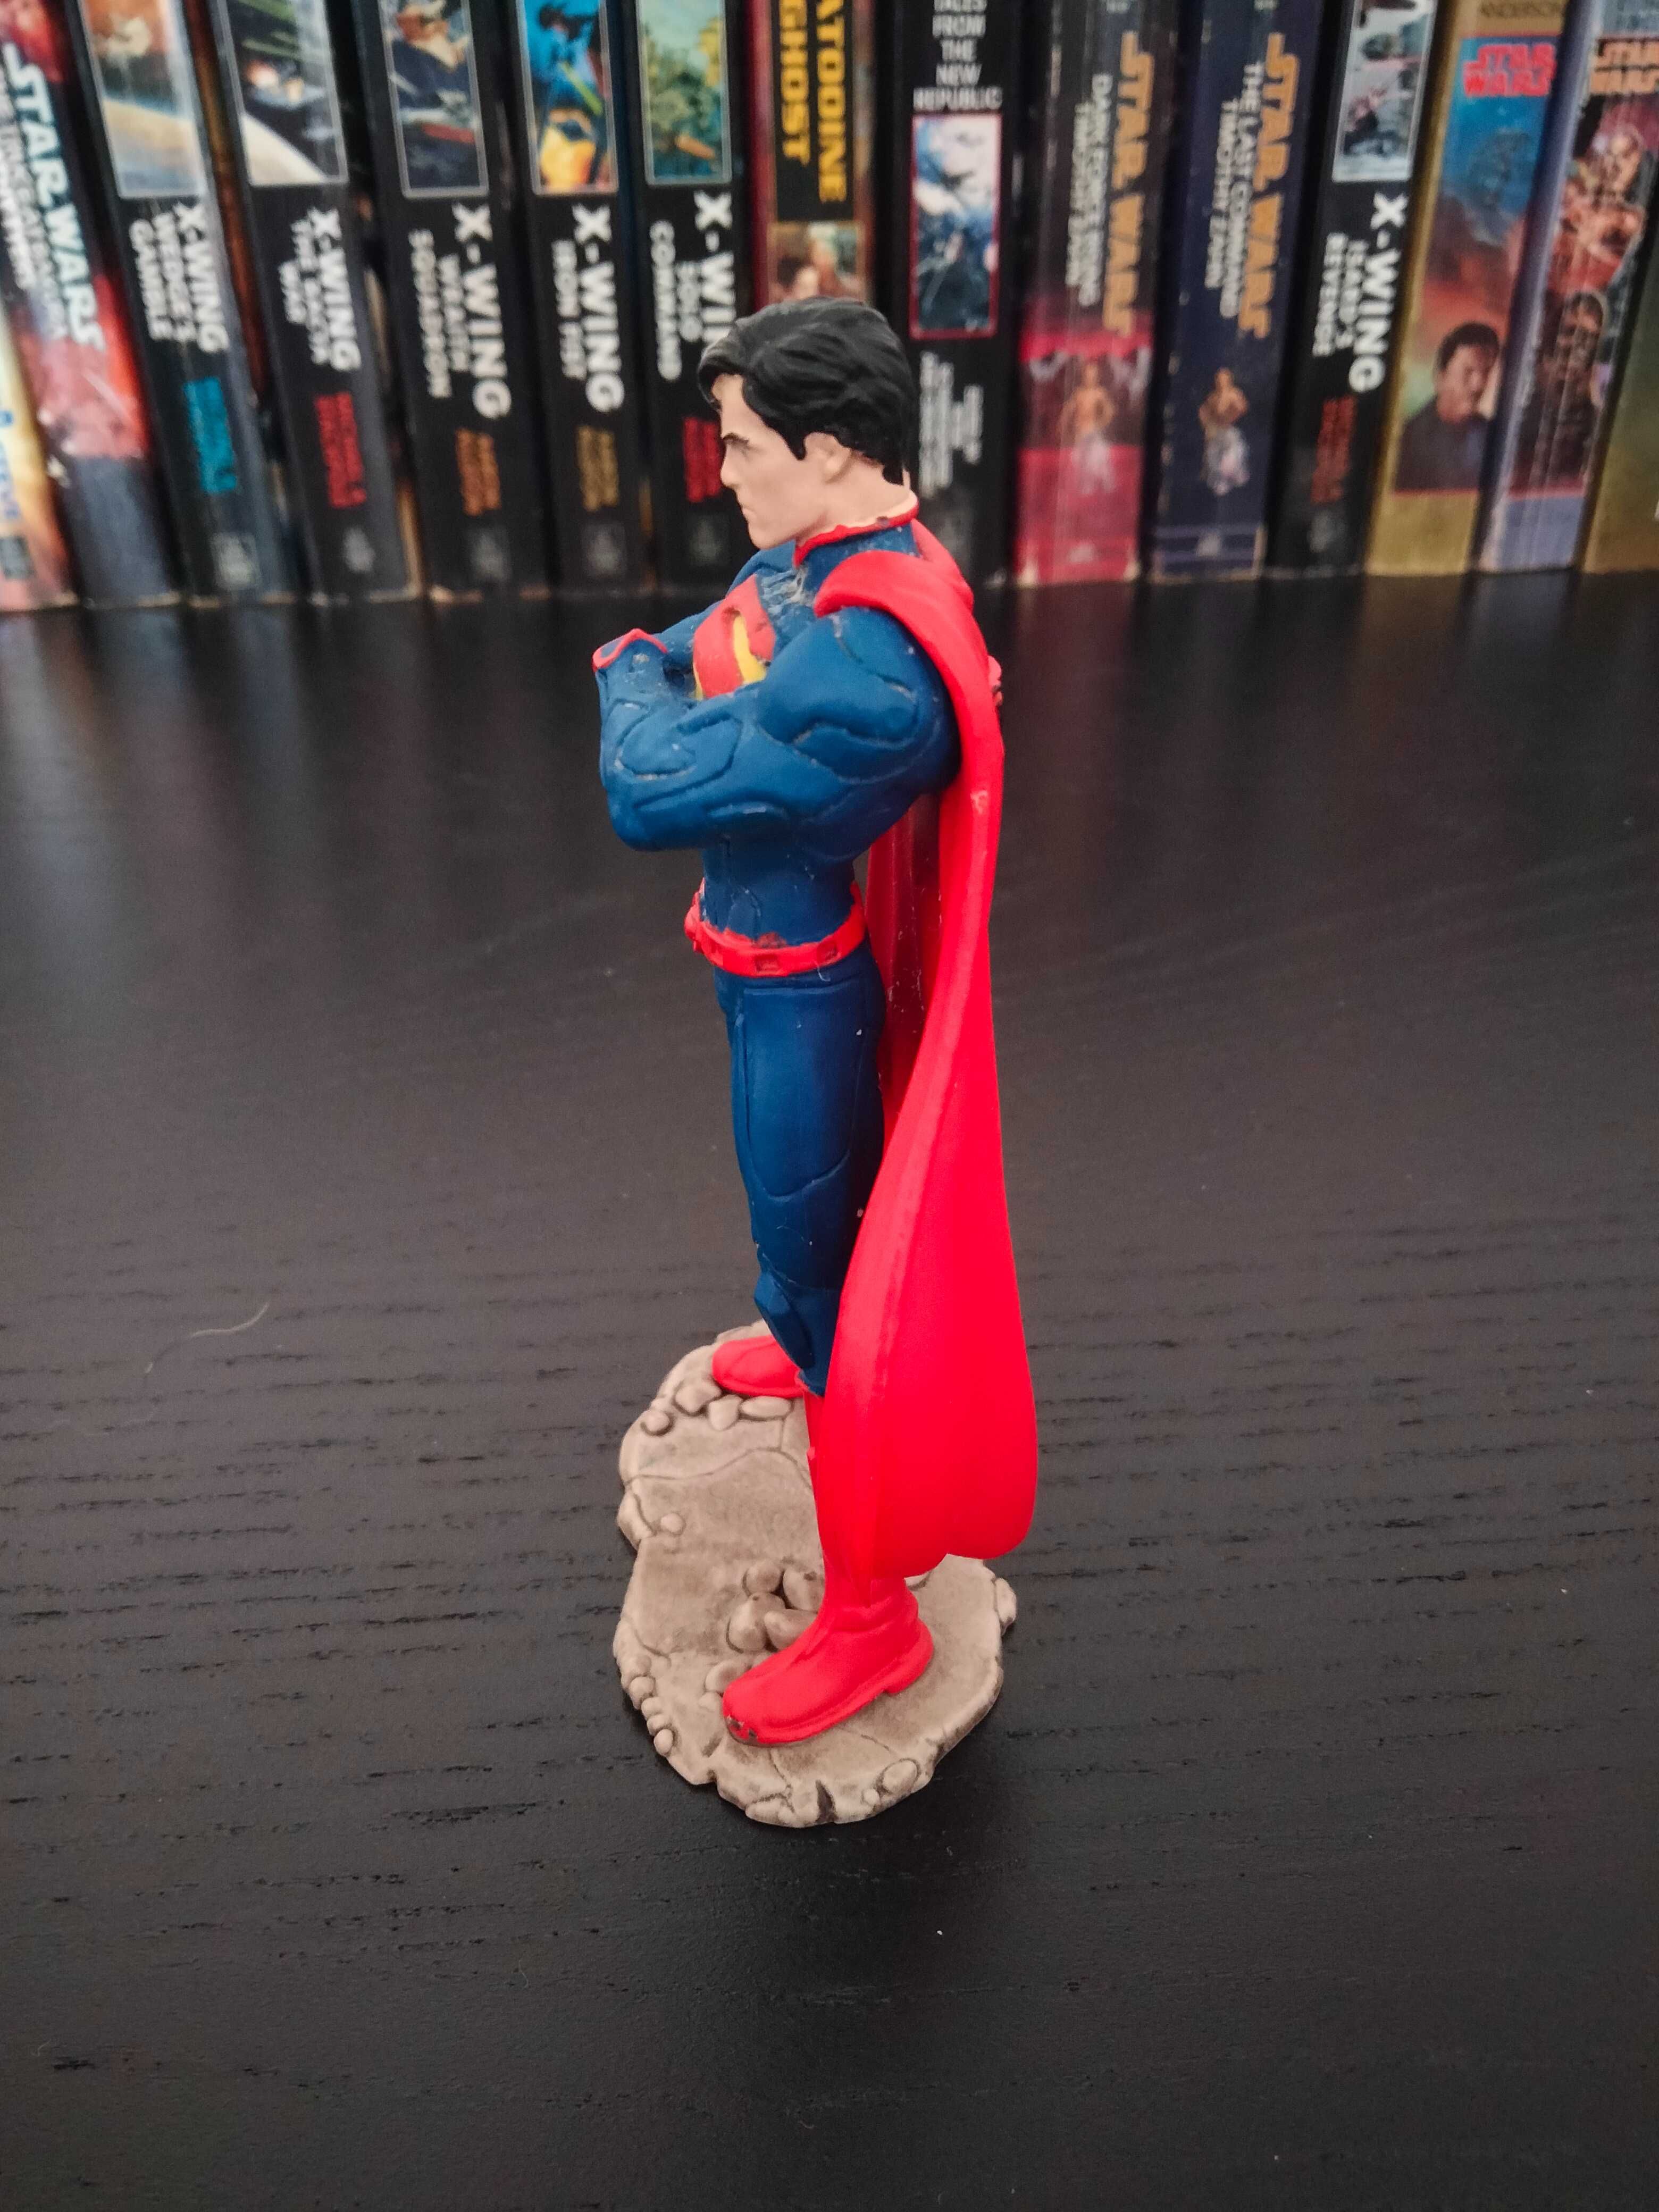 Figura Colecionável "Justice League: Superman" da Schleich